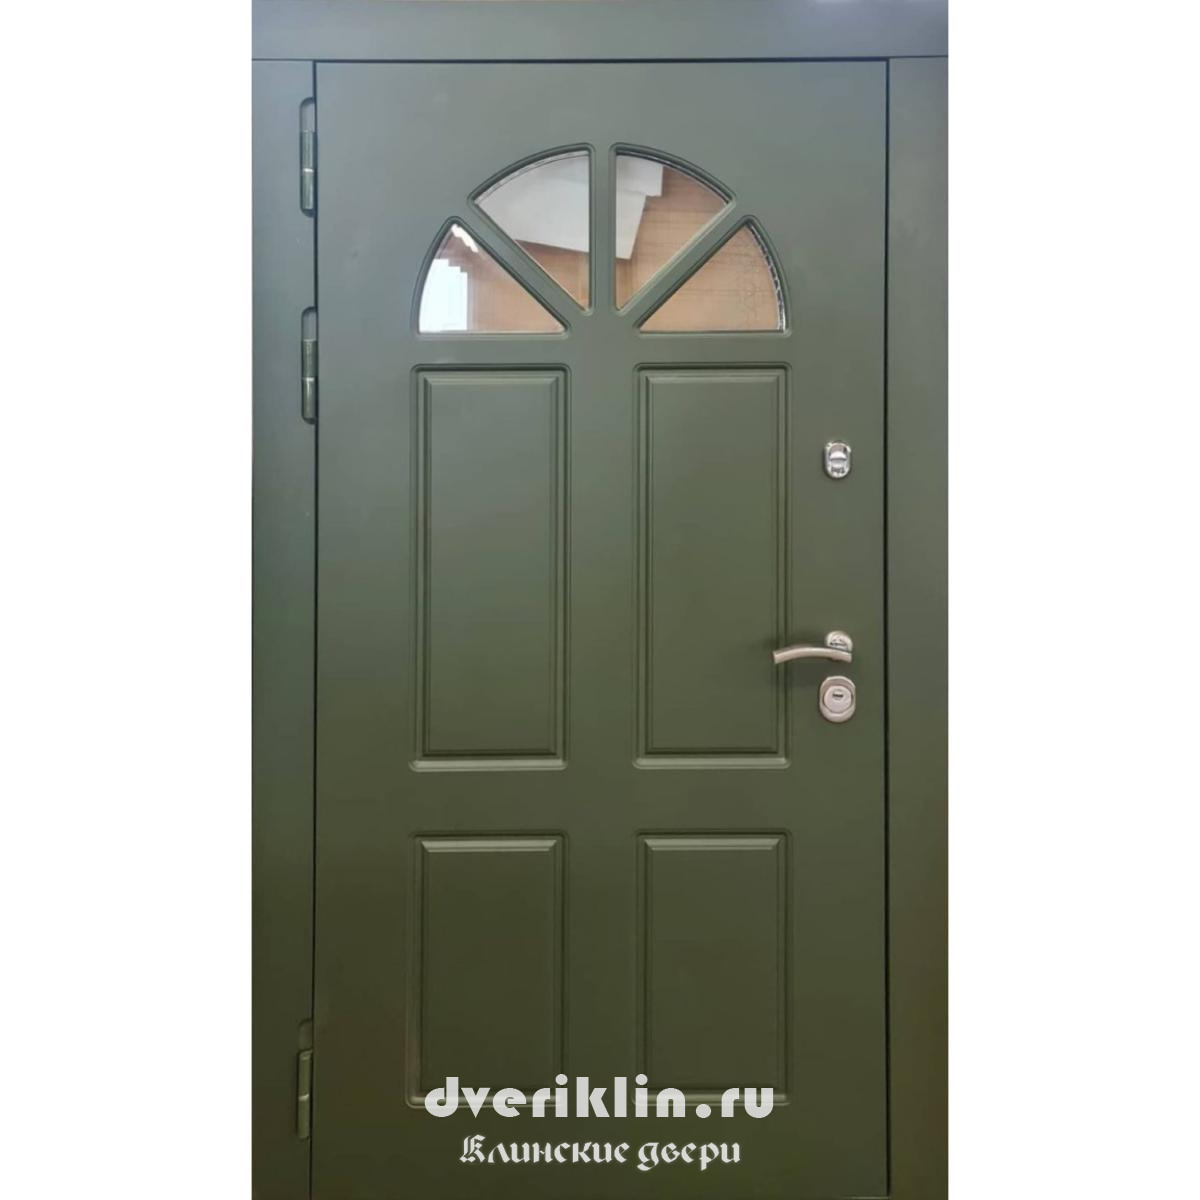 Дверь в дом MDD-33 (В частный дом)